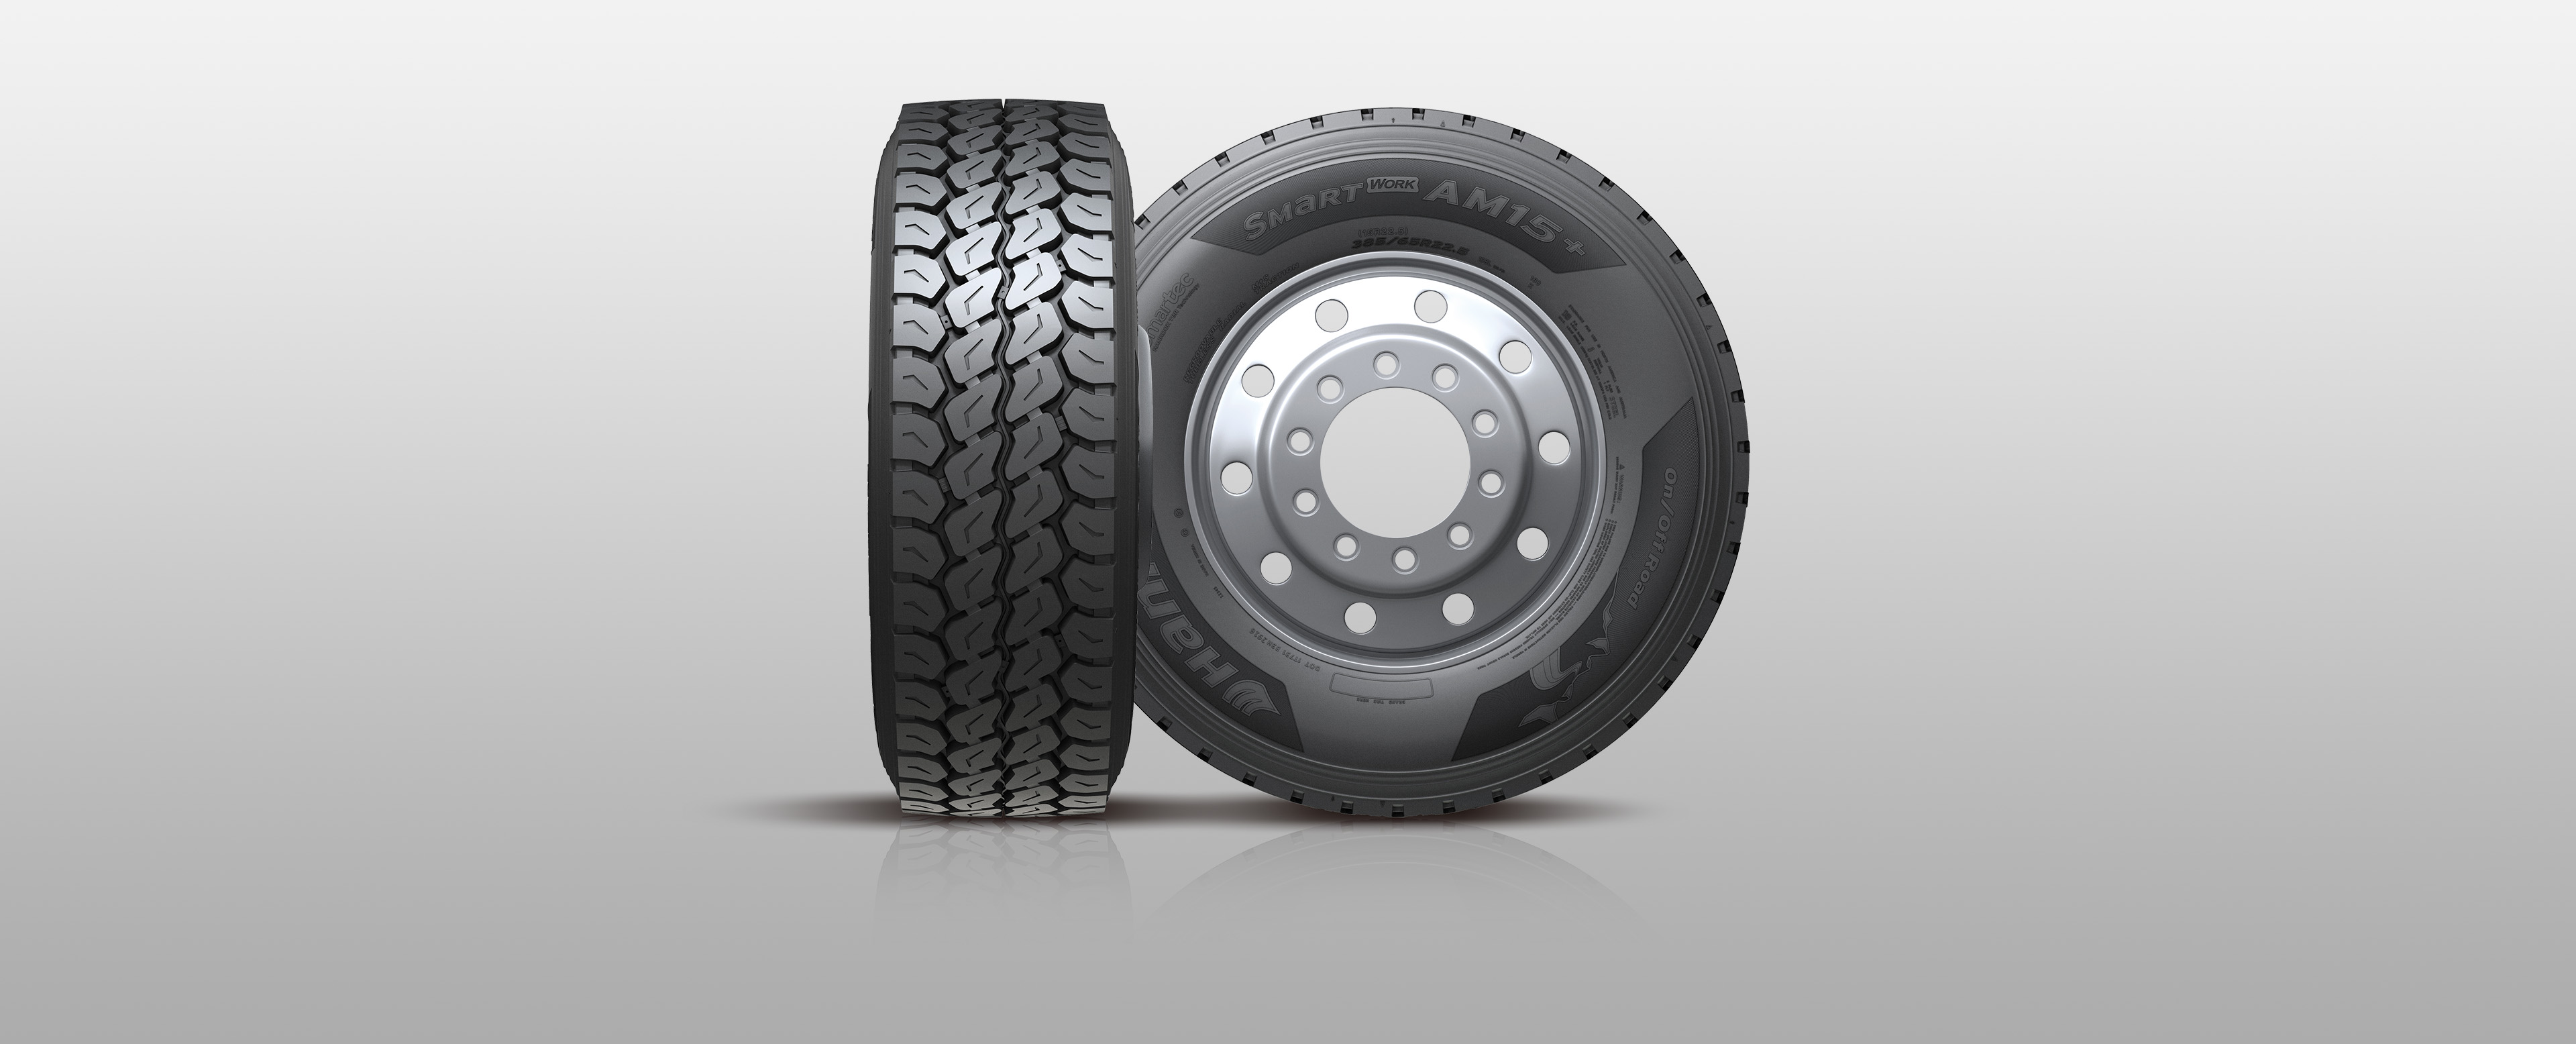 Hankook Tire & Technology -Anvelope-Smart-Smart Work-AM15plus-Anvelopă radială pentru toate pozițiile, pentru utilizare pe șosea și pe teren accidentat